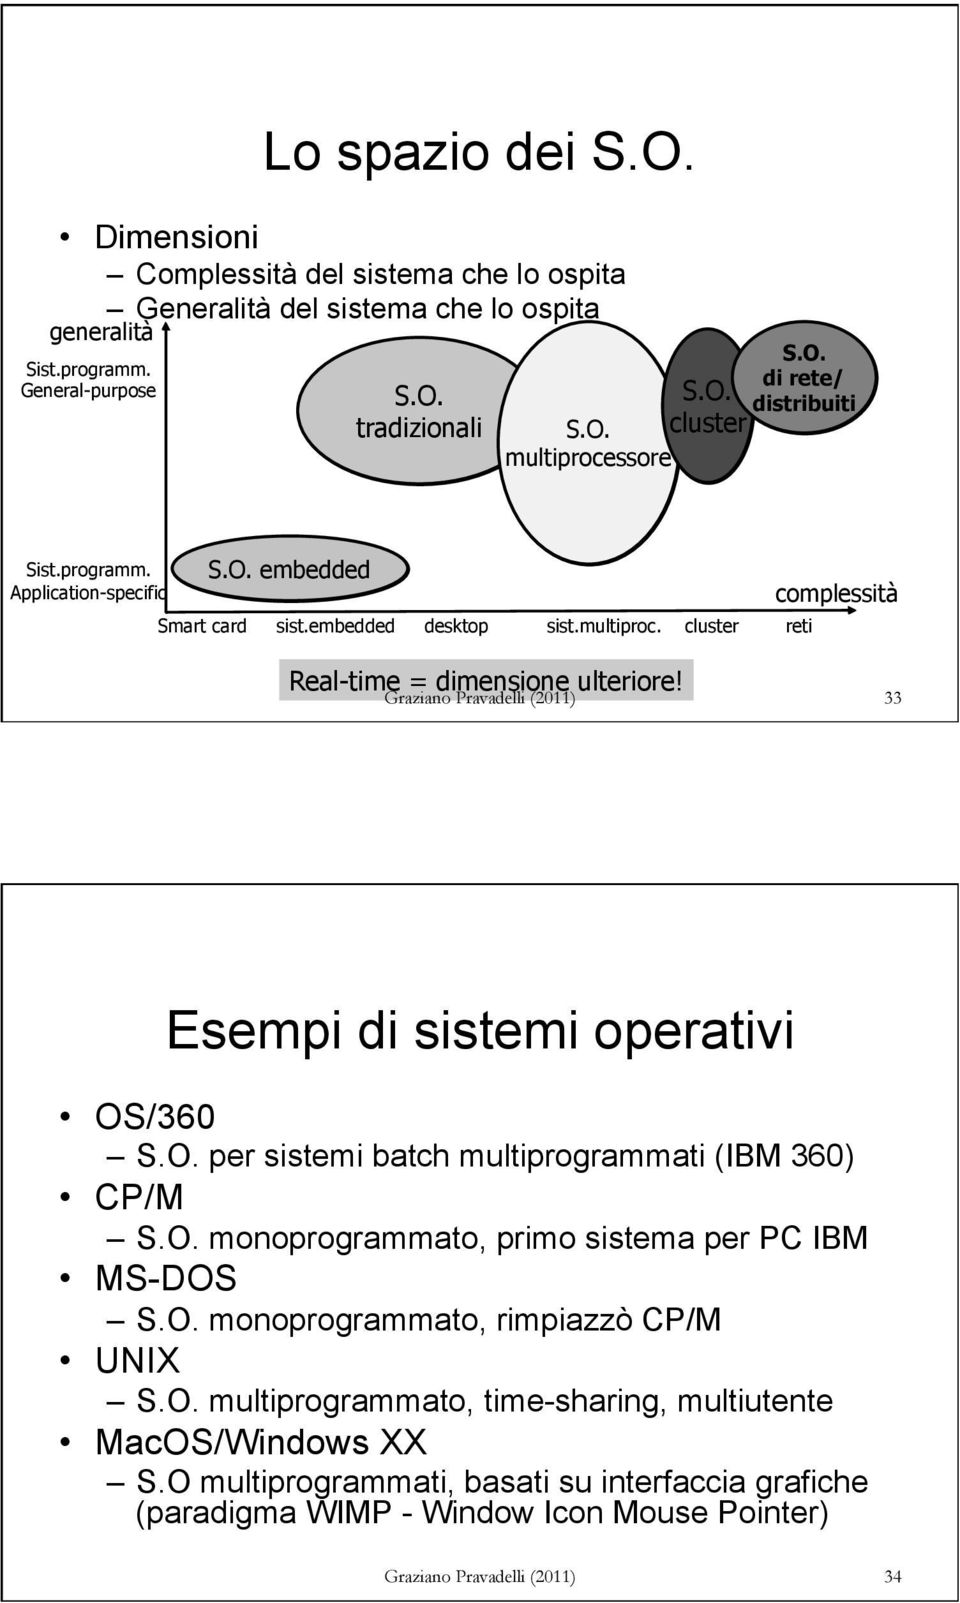 33 Esempi di sistemi operativi OS/360 S.O. per sistemi batch multiprogrammati (IBM 360) CP/M S.O. monoprogrammato, primo sistema per PC IBM MS-DOS S.O. monoprogrammato, rimpiazzò CP/M UNIX S.